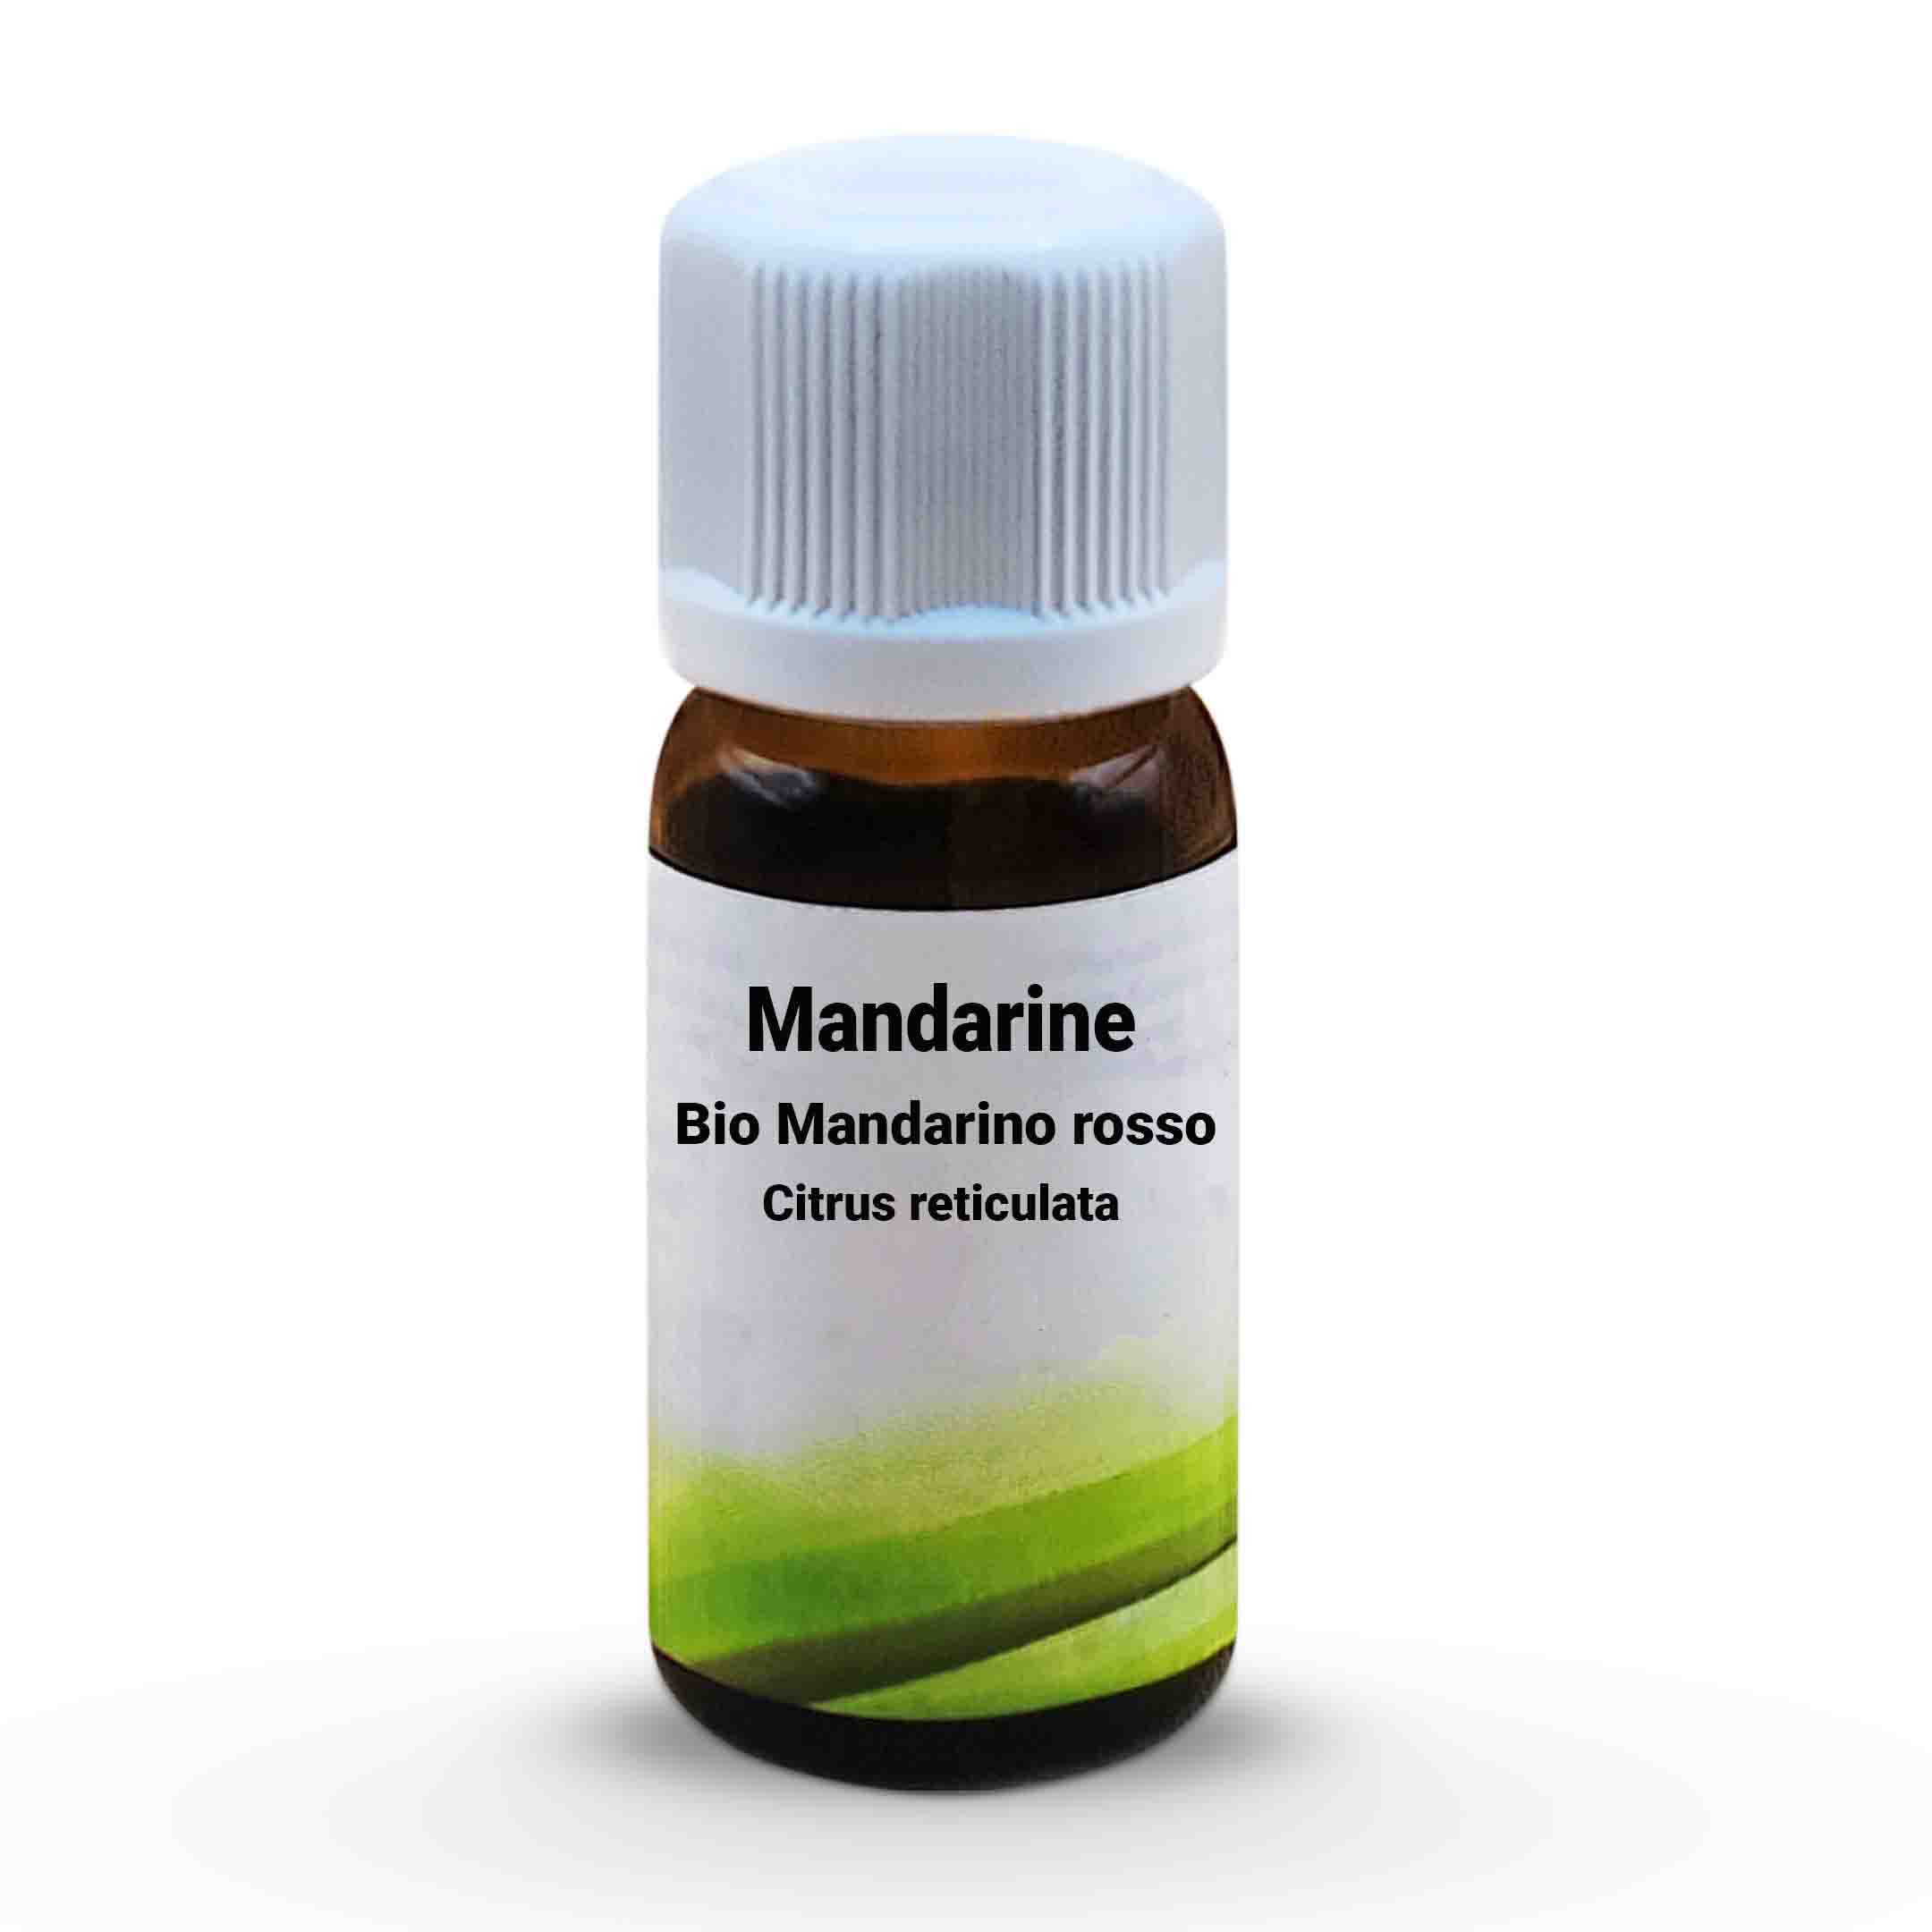 Mandarine  Bio Mandarino rosso - Citrus reticulata 10 ml